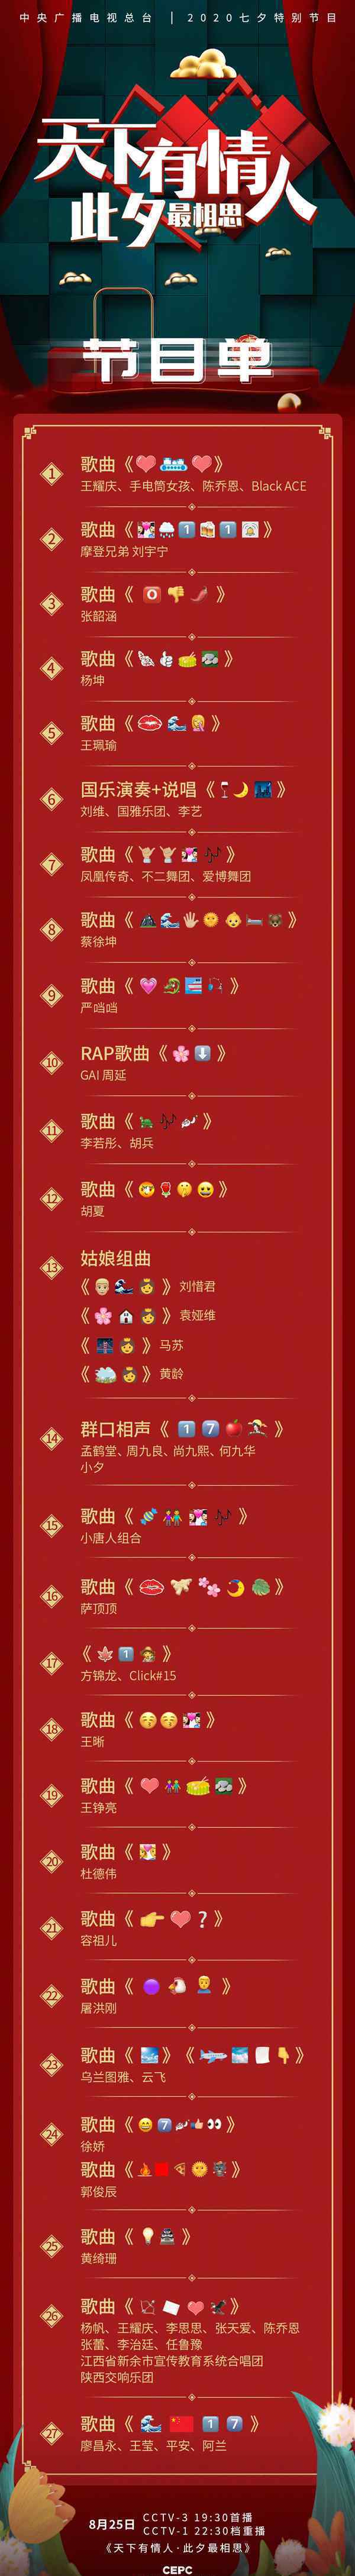 央视七夕晚会emoji节目单 对此大家怎么看？